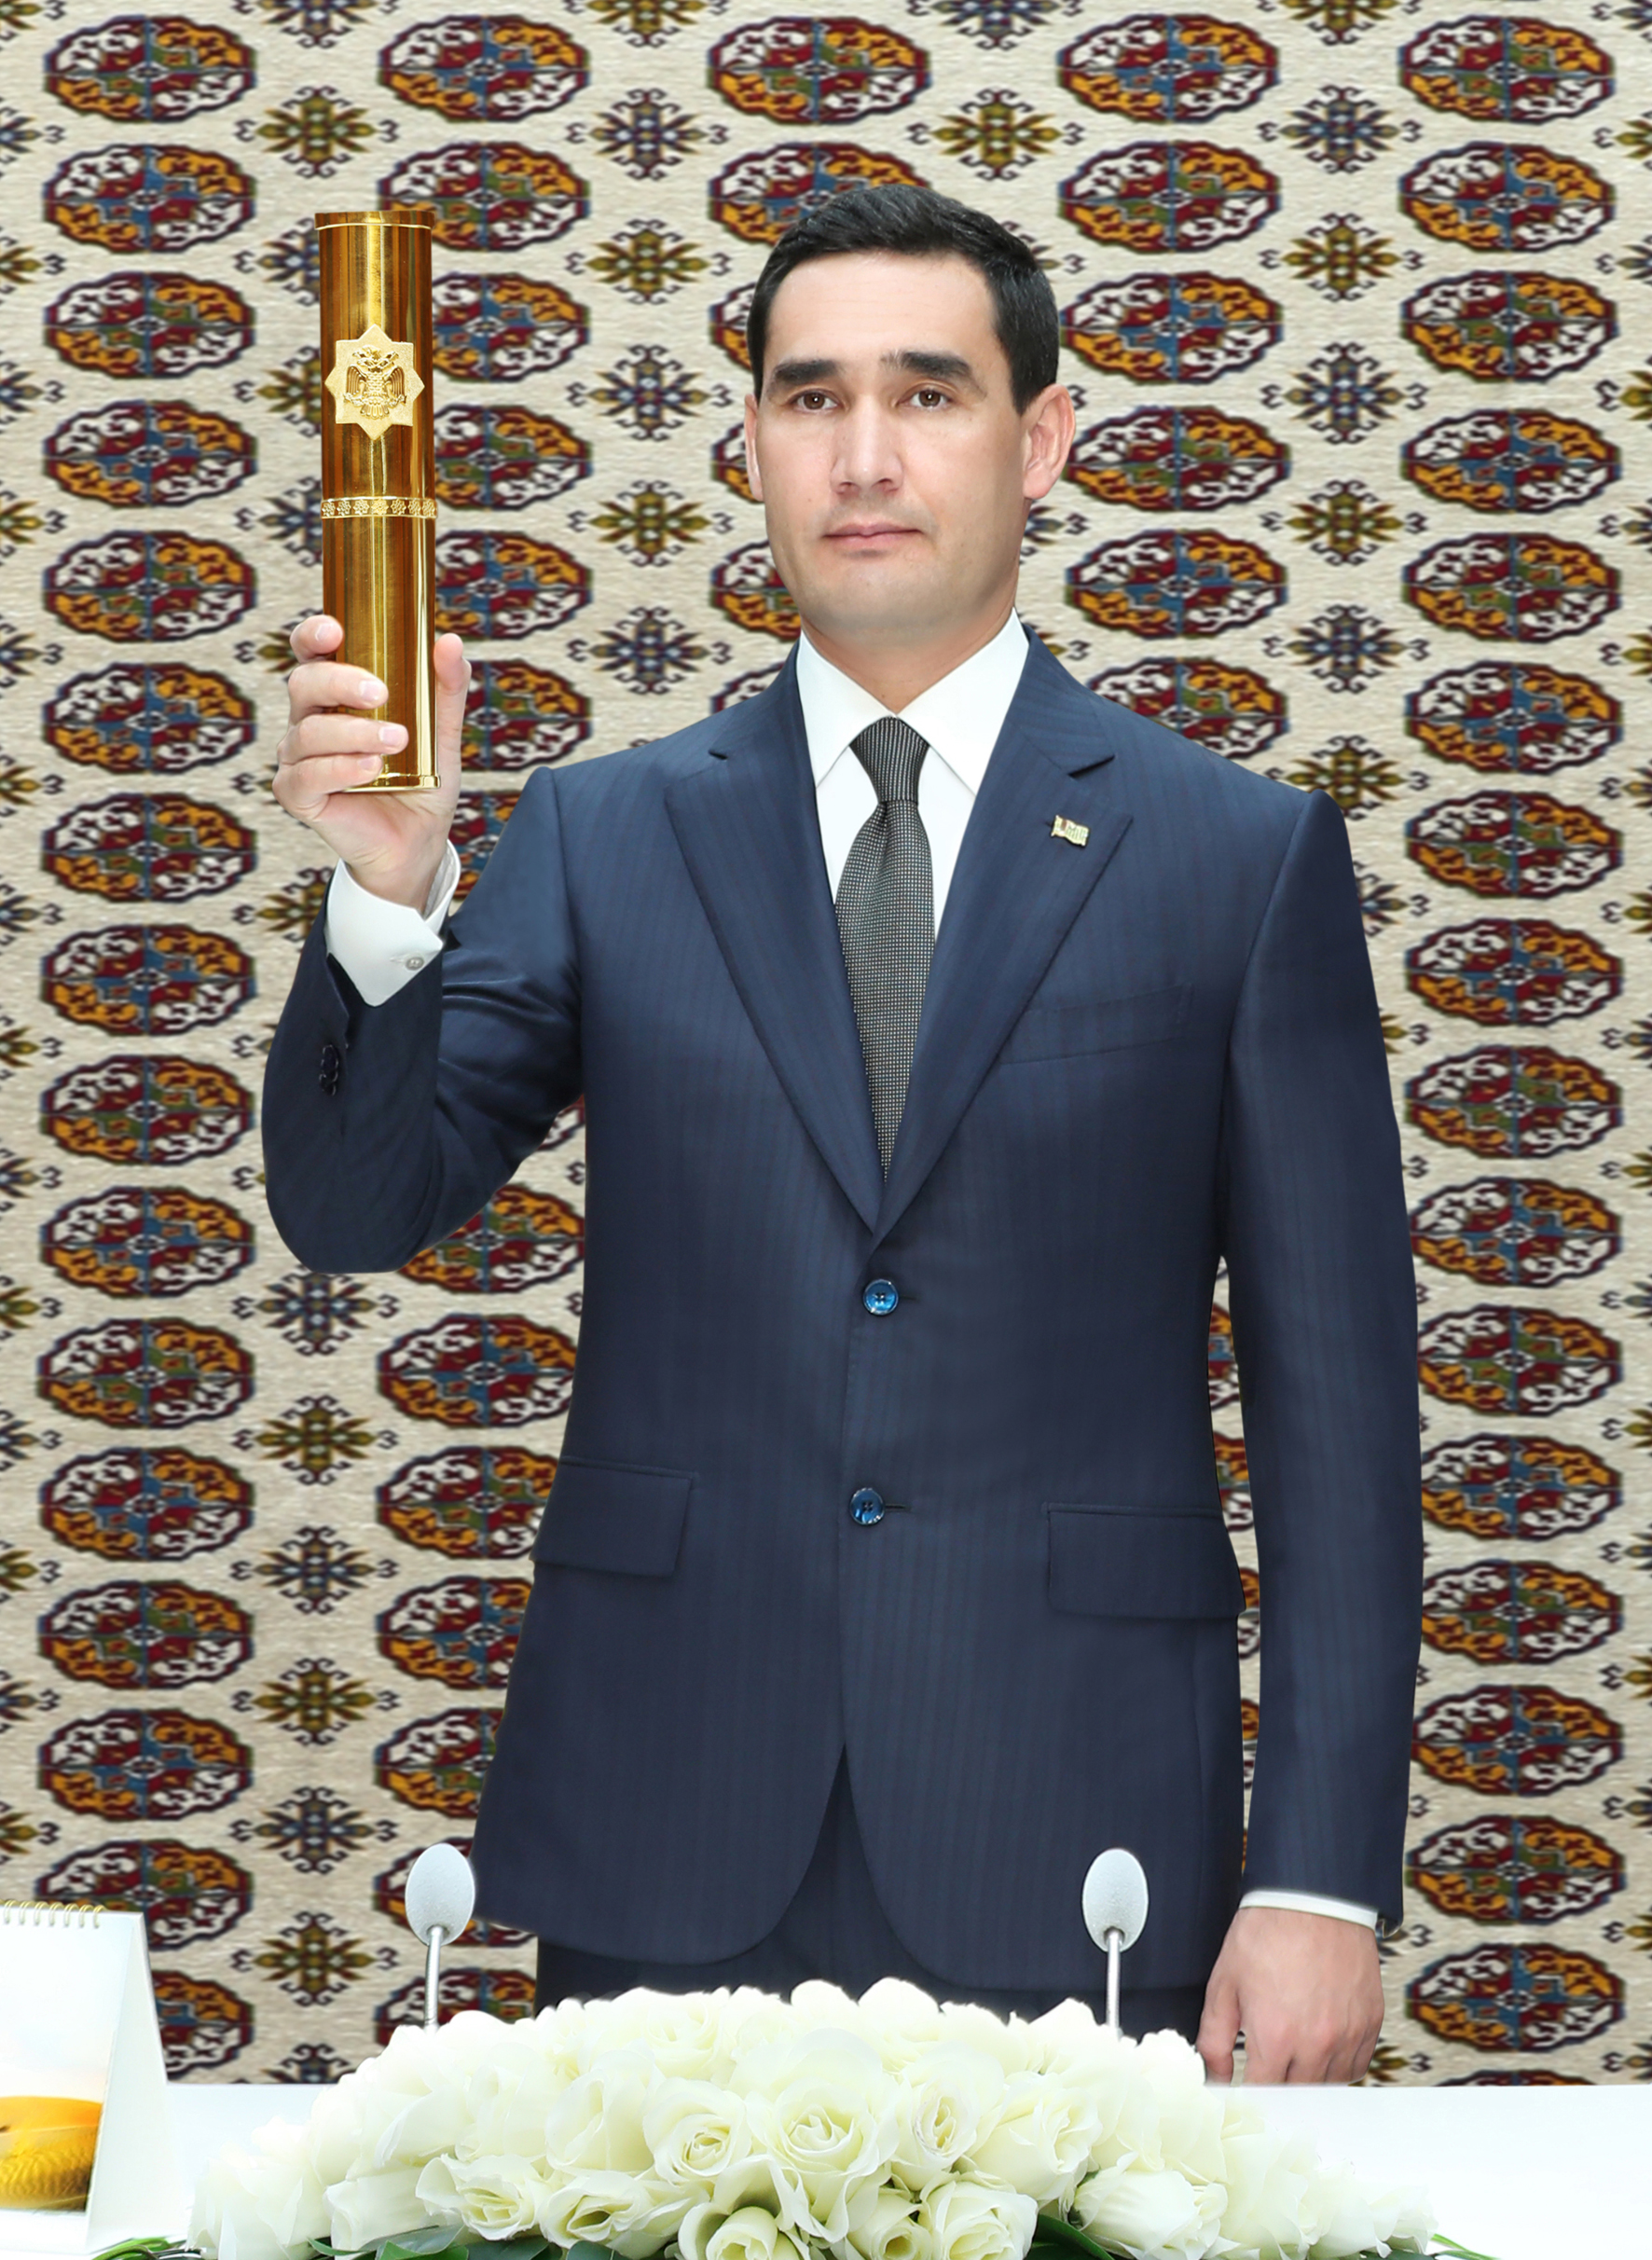 Türkmenistanyň Prezidenti Garabogazköl aýlagynyň üstünden geçýän täze awtomobil köprüsiniň düýbüni tutmak dabarasyna gatnaşdy